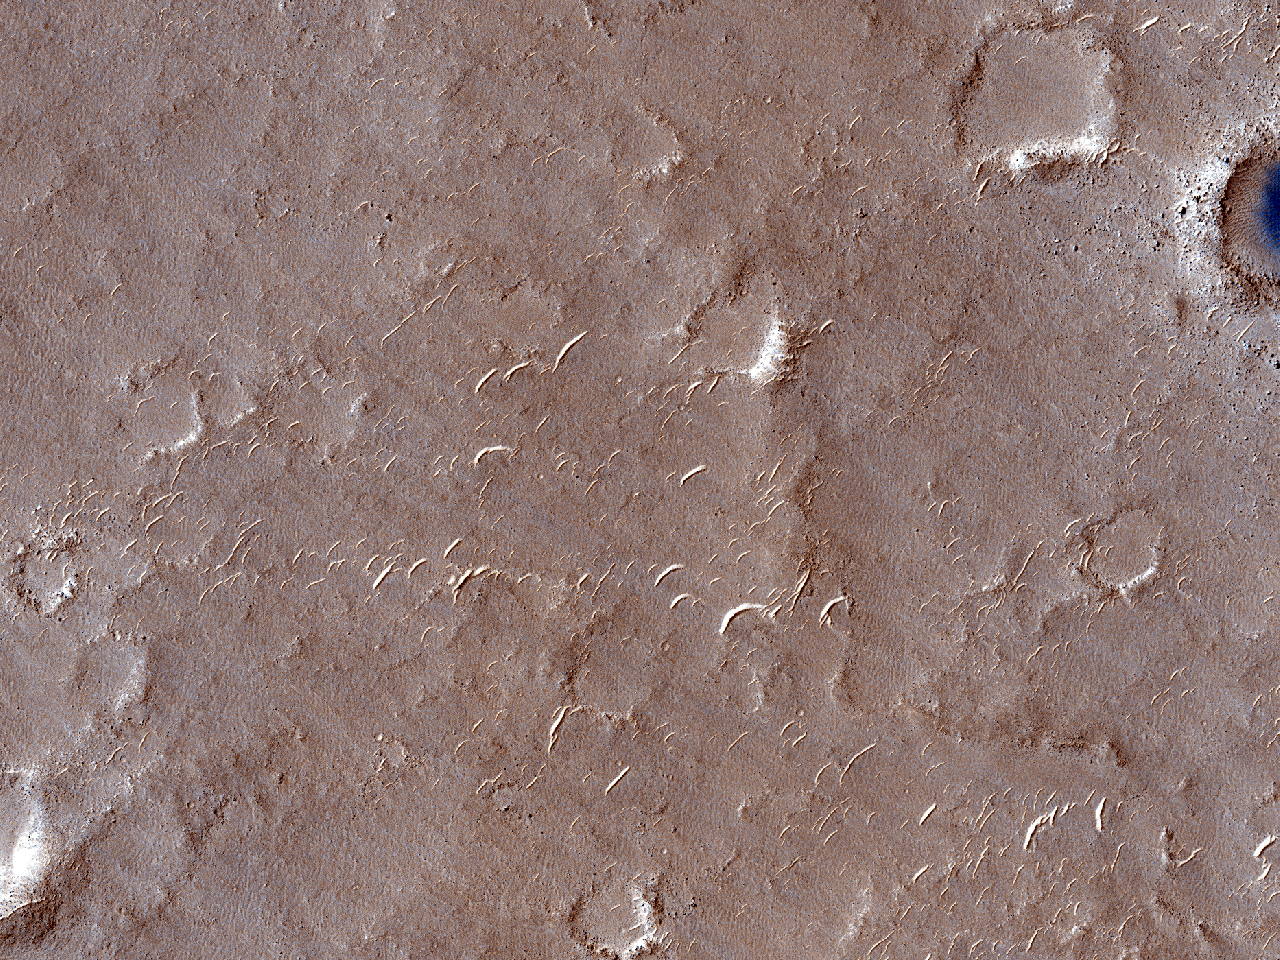 Kstenlinie im sdlichen Isidis Planitia